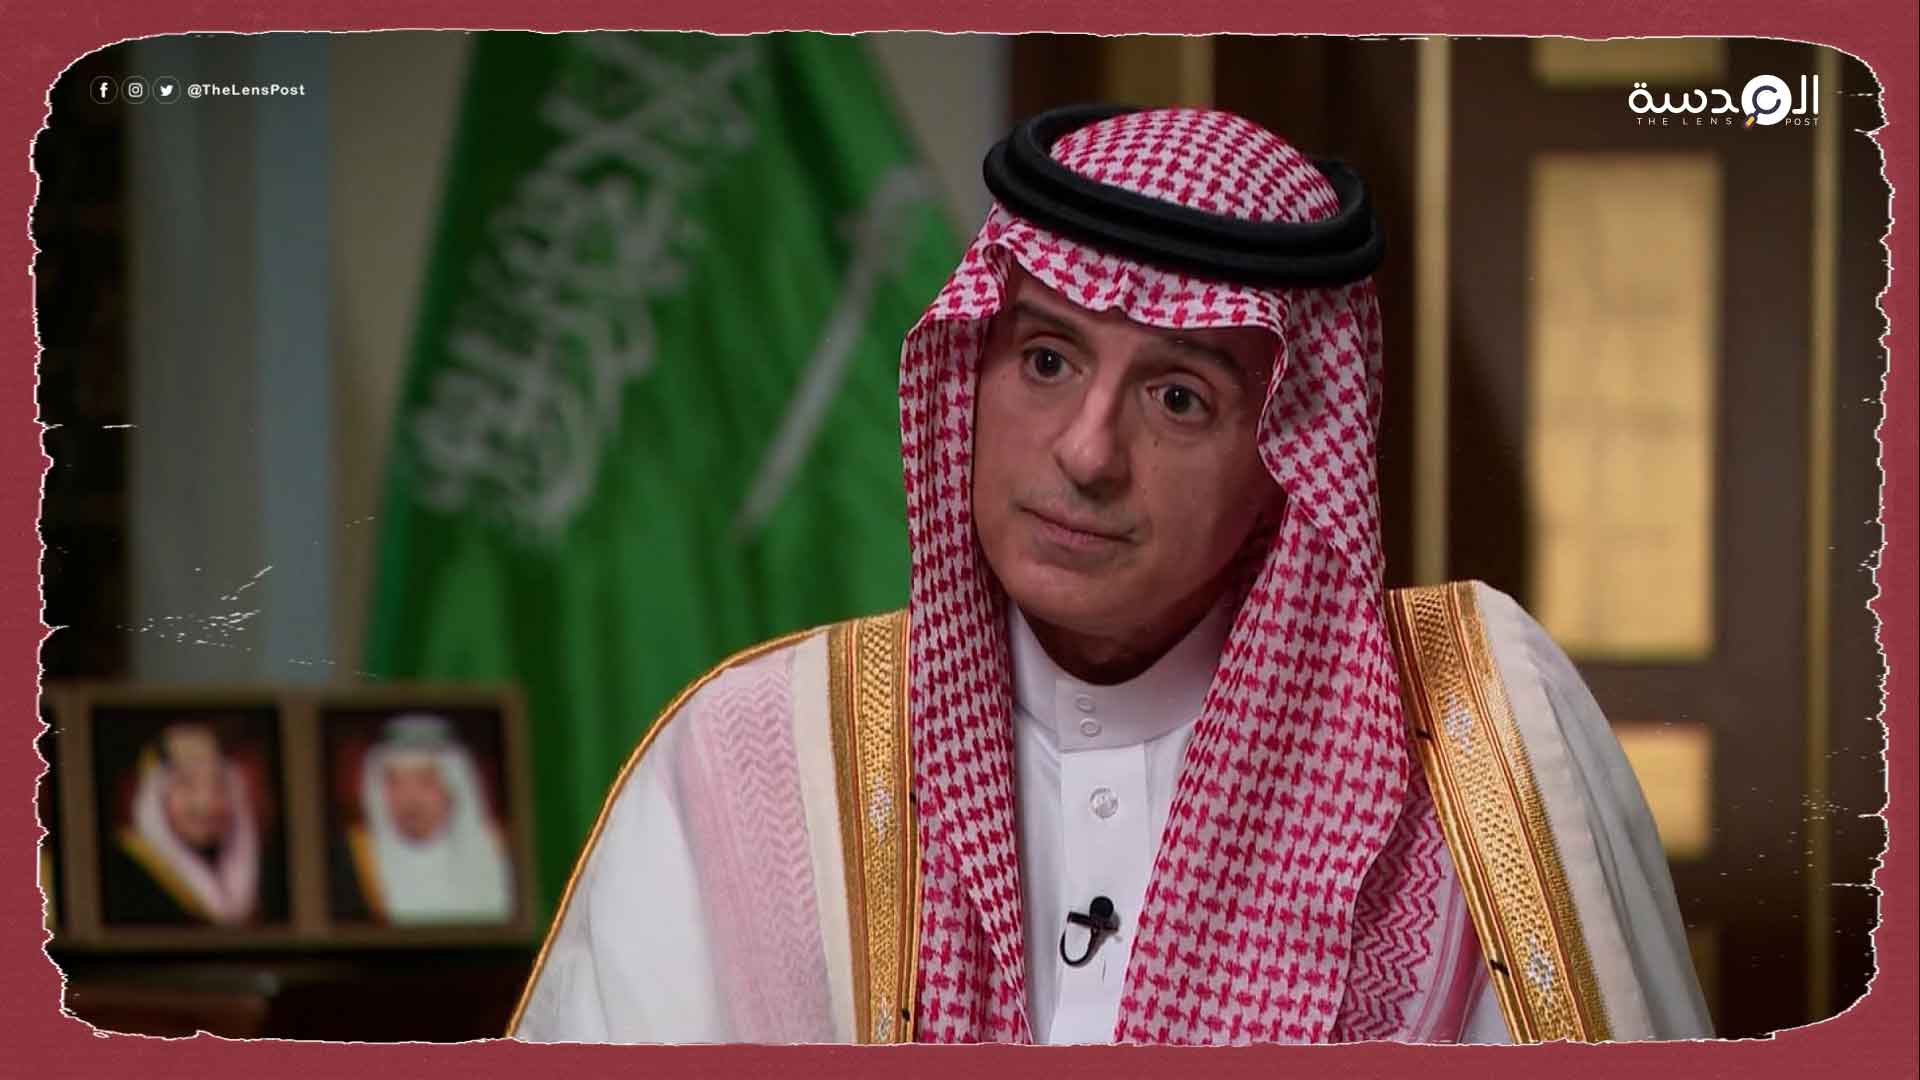 فايننشال تايمز: السعودية تأثر بالرد فعل الأمريكي العنيف على قرار خفض إنتاج النفط